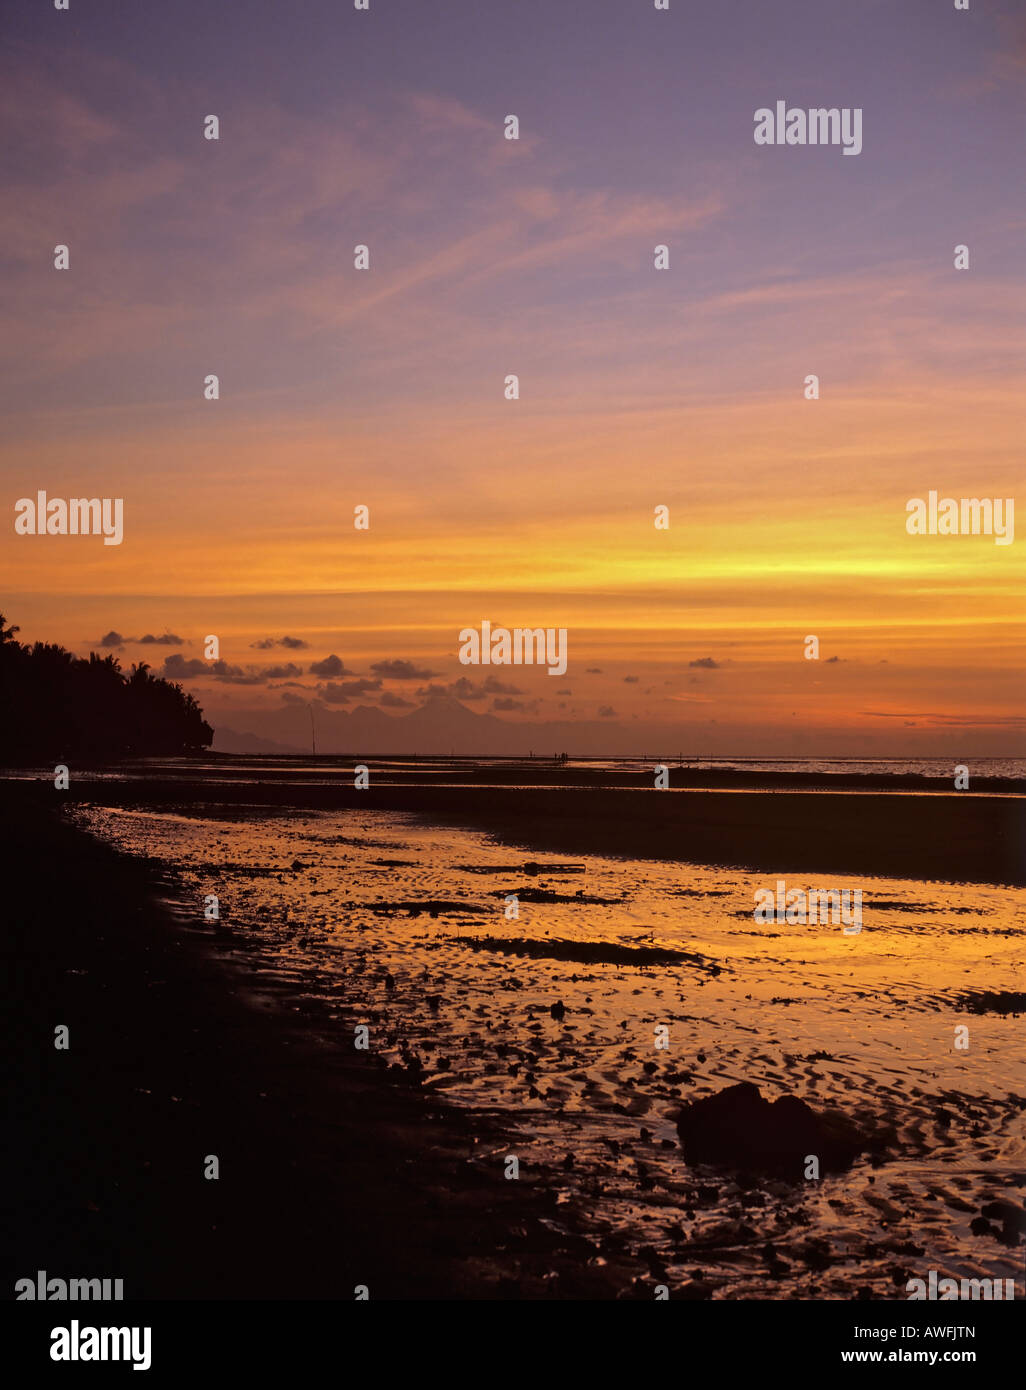 Glowing night sky, low tide, Bali, Indonesia, Asia Stock Photo